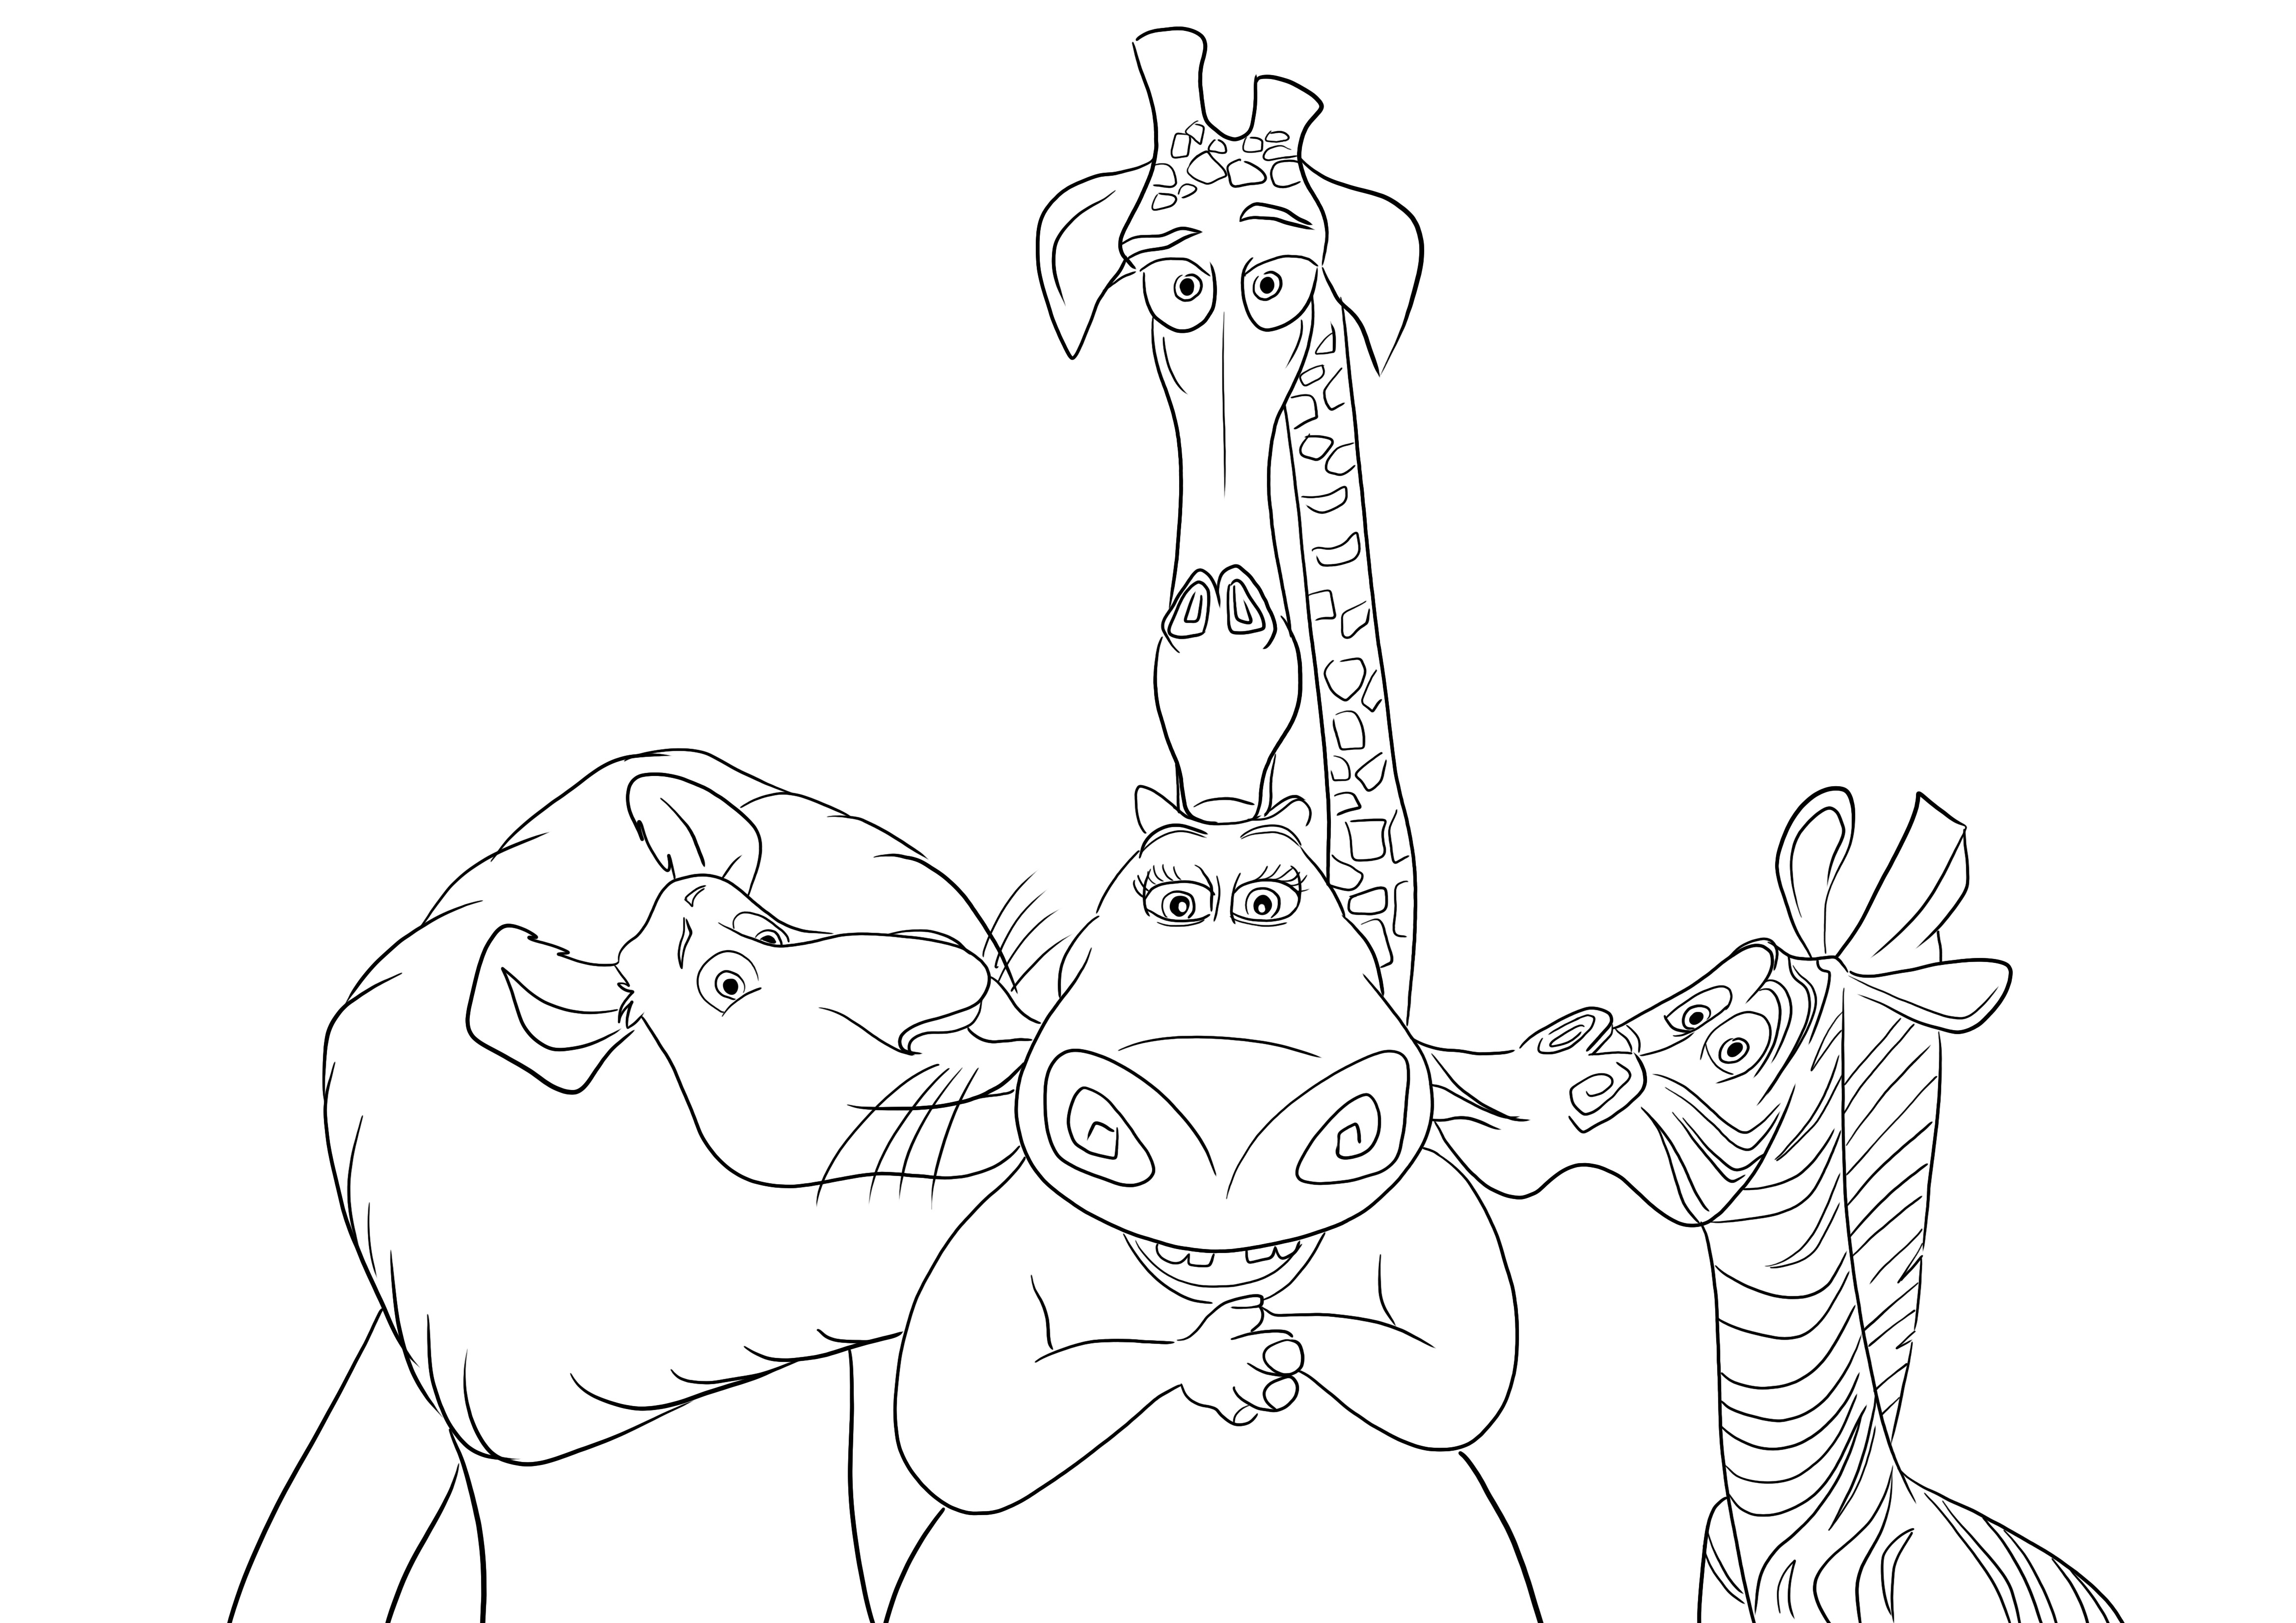 Bezpłatny wydruk, na którym Alex-Martin i Melman całują hipopotama Glorię do pokolorowania dla dzieci